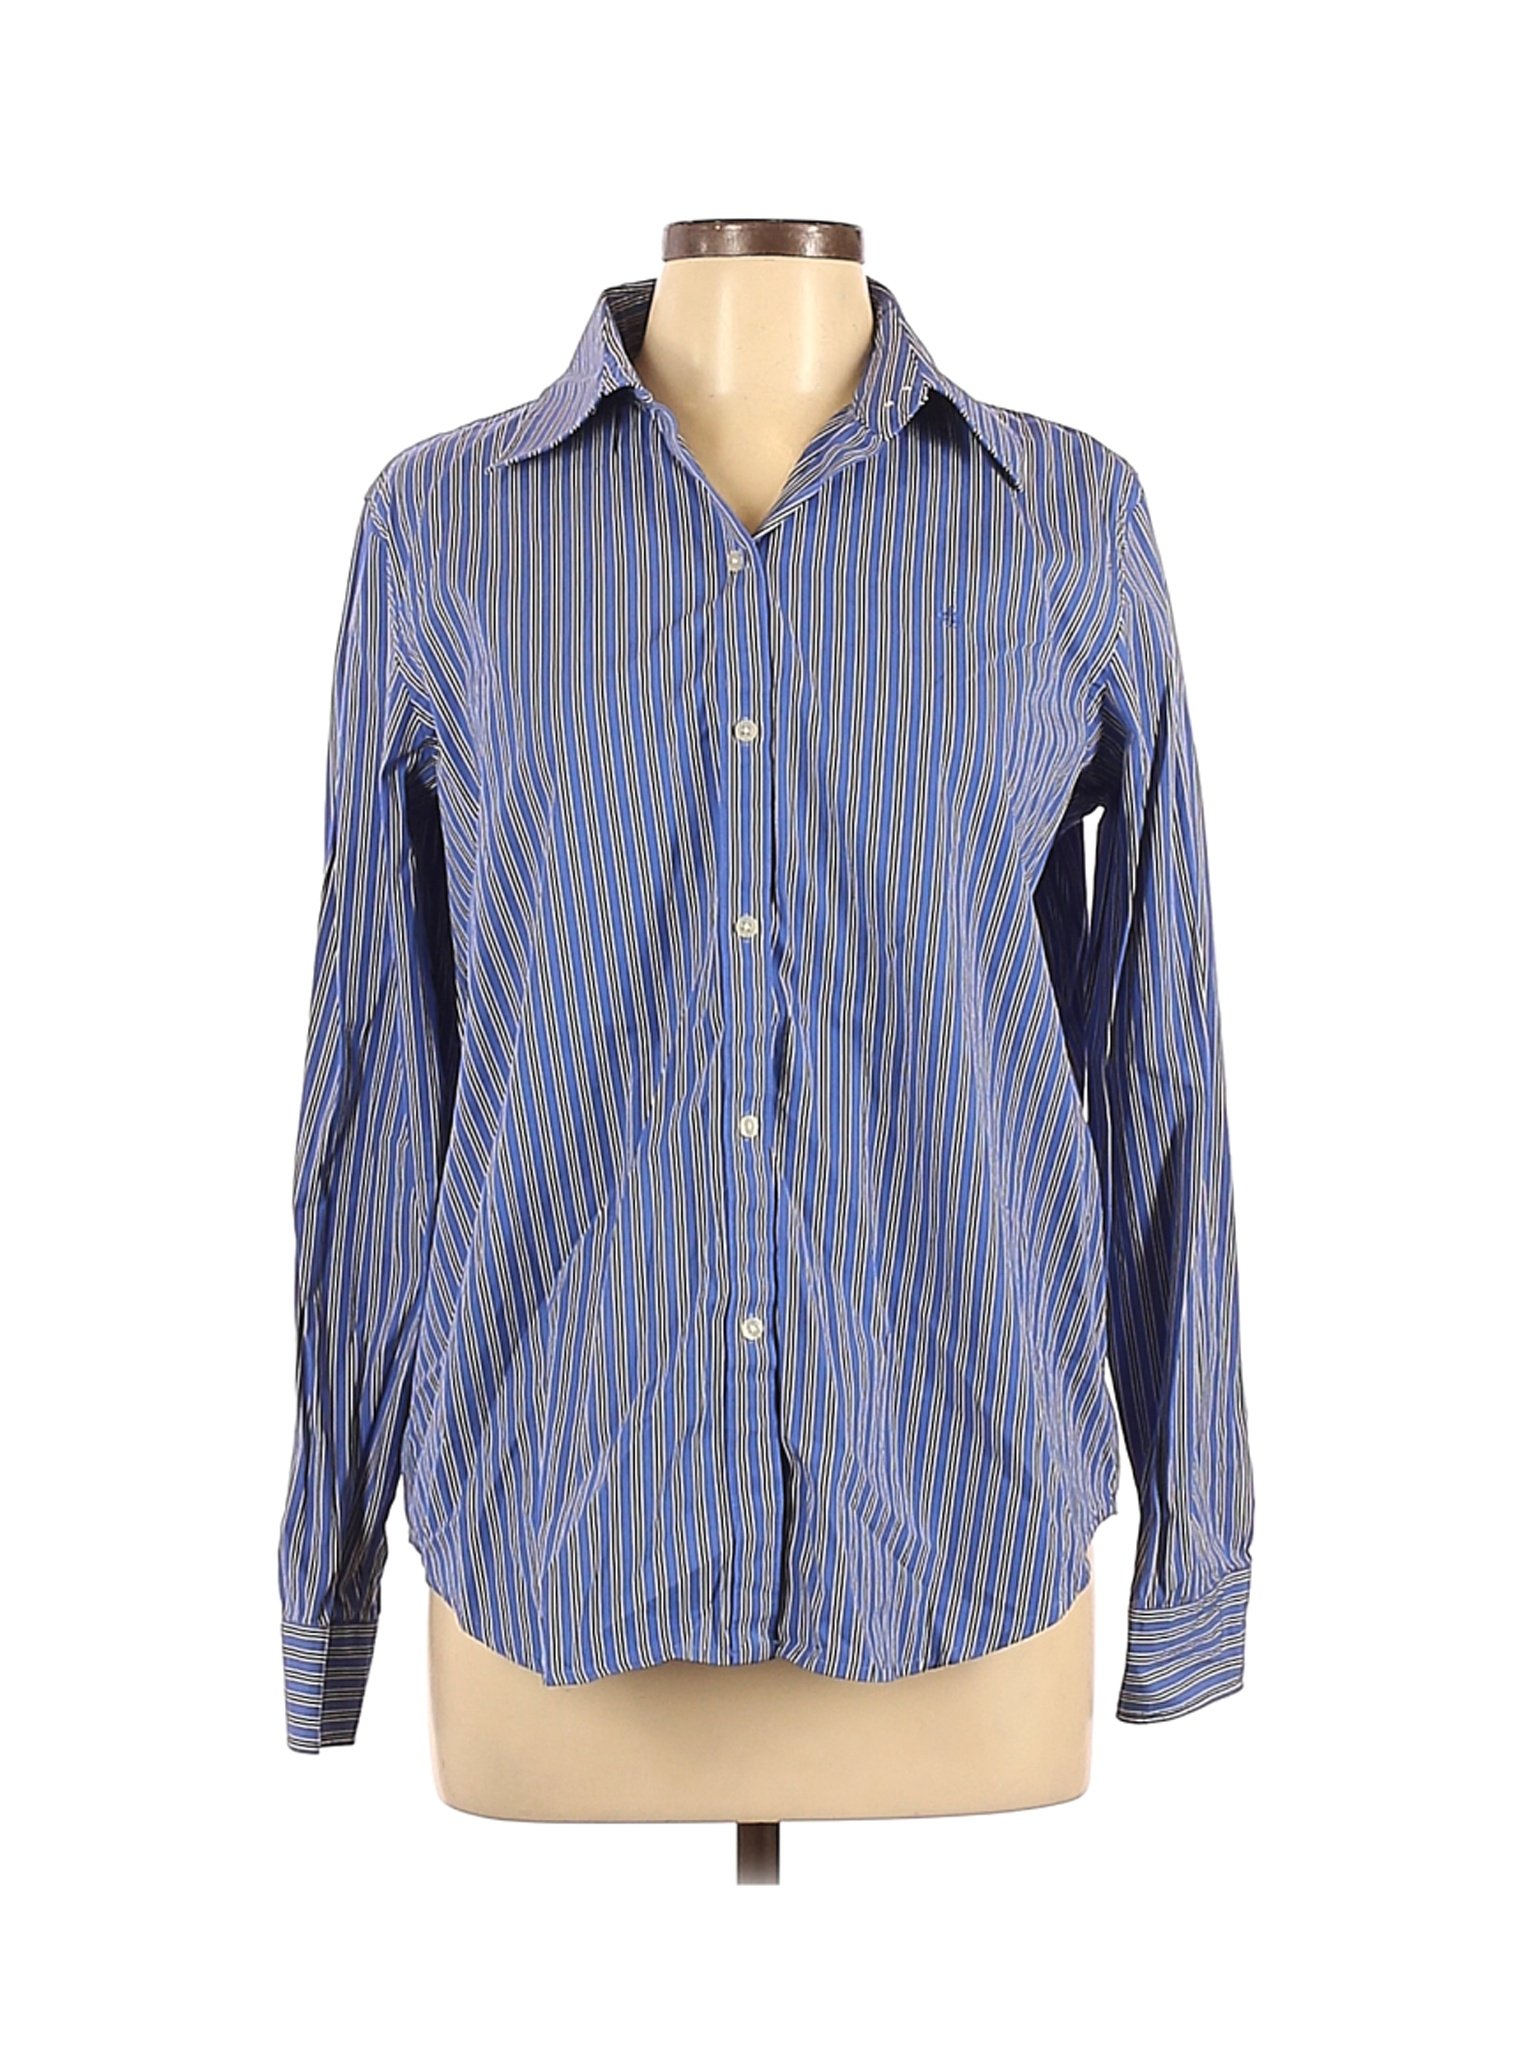 Lauren by Ralph Lauren Women Blue Long Sleeve Button-Down Shirt L | eBay